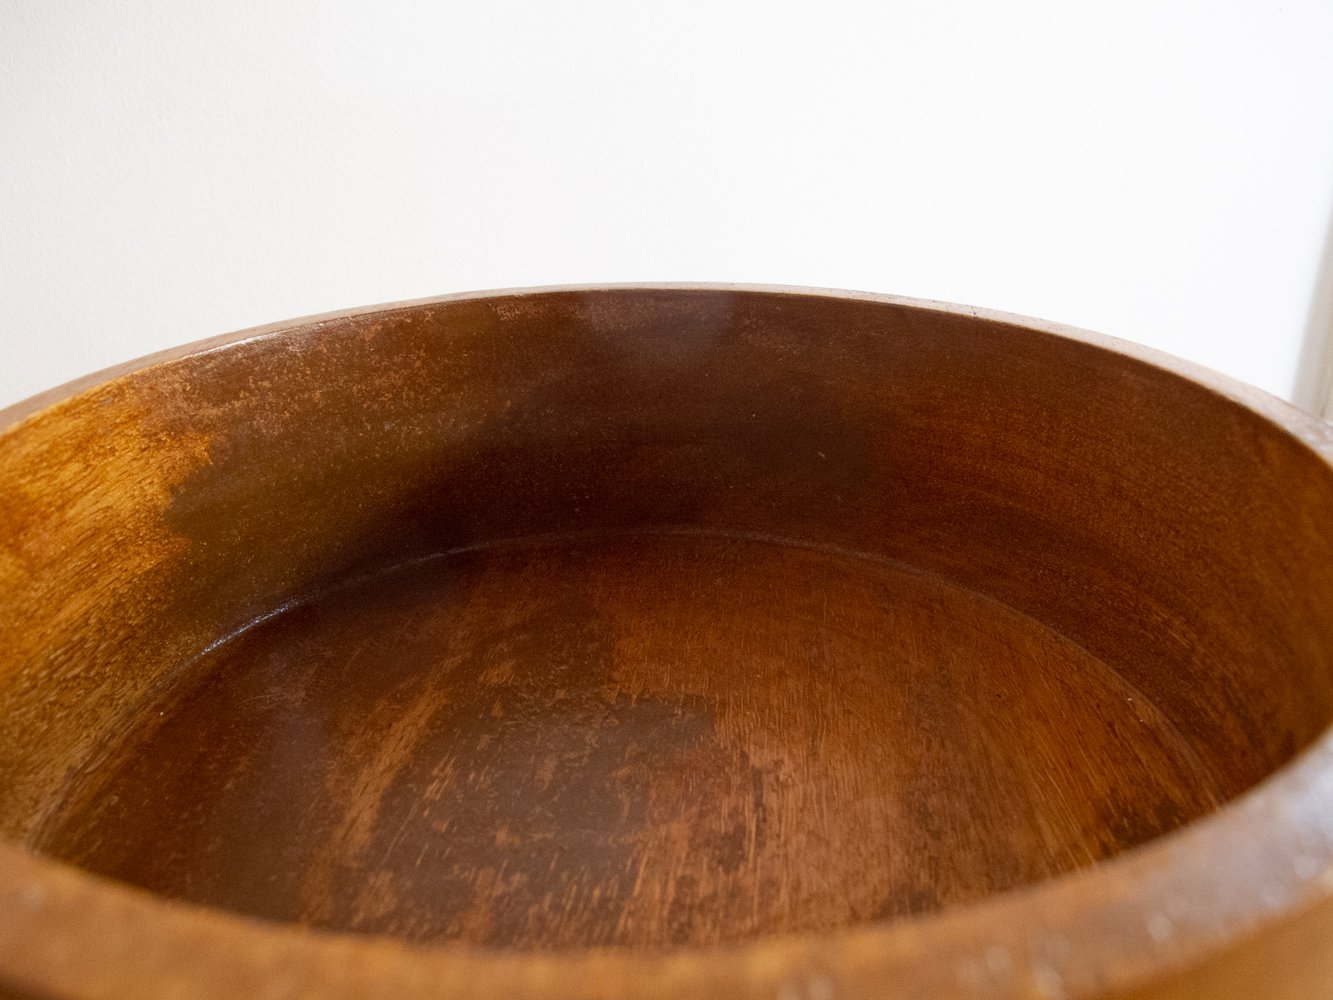 Image of teak bowl